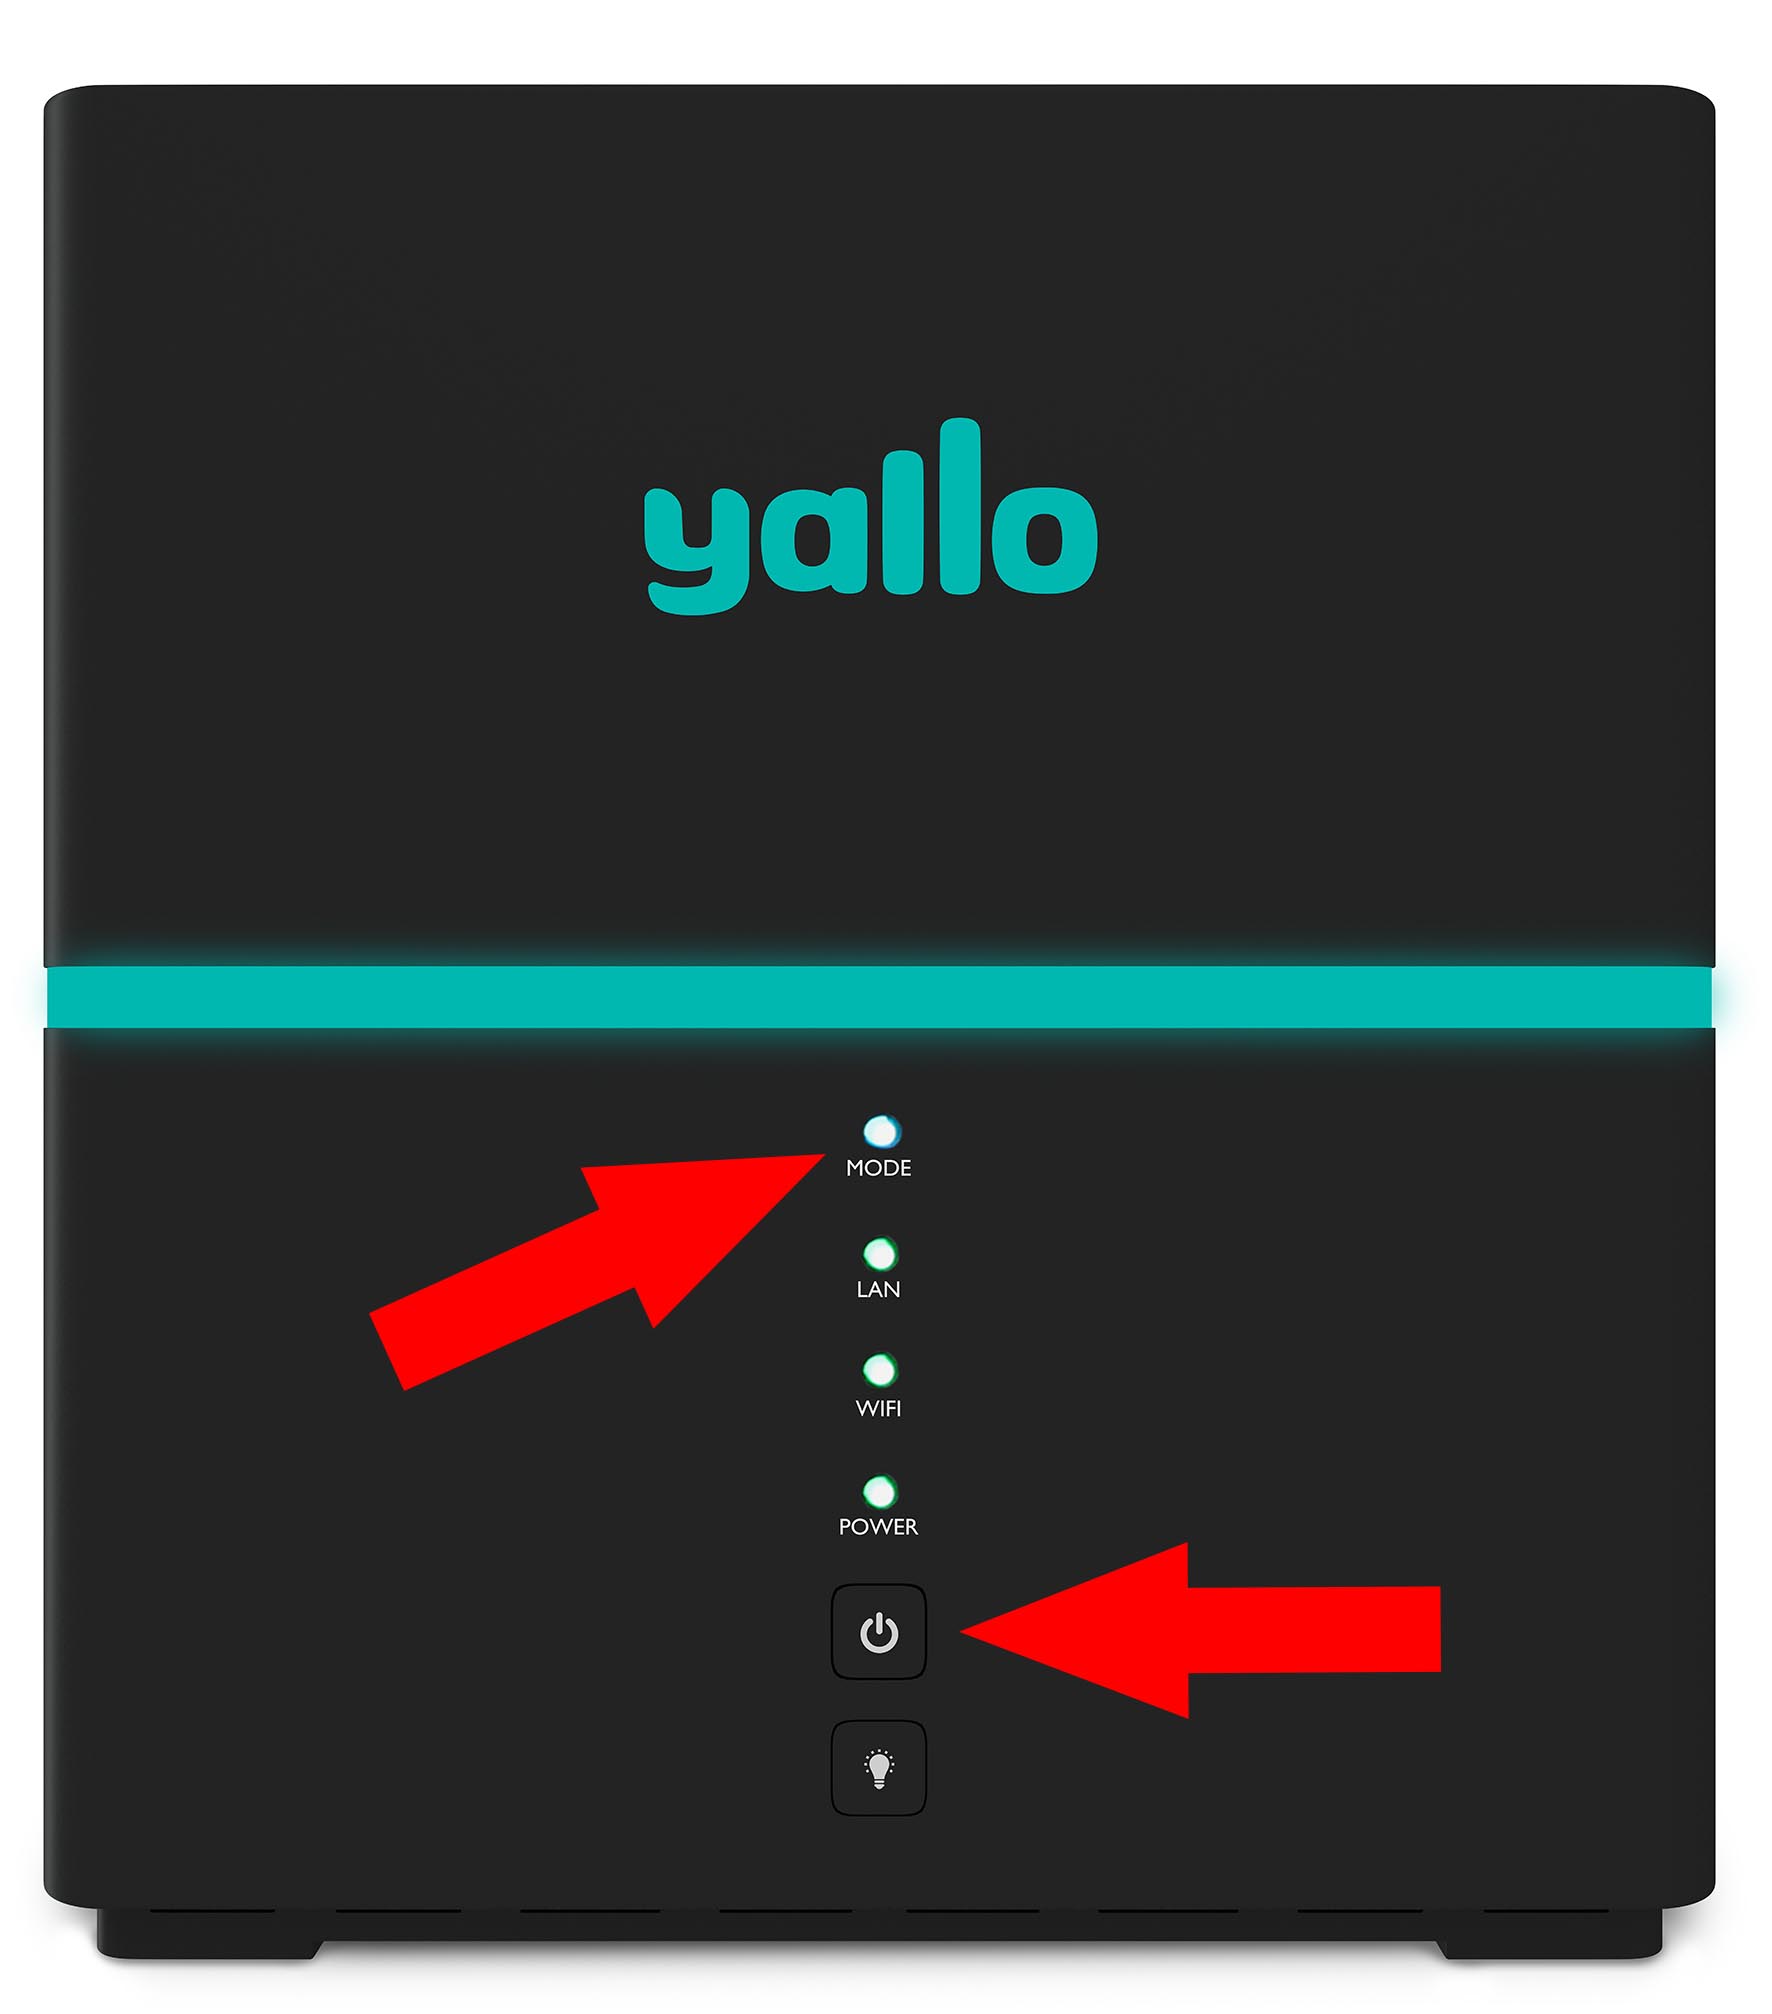 14_yallo_Box-Power-button.jpg